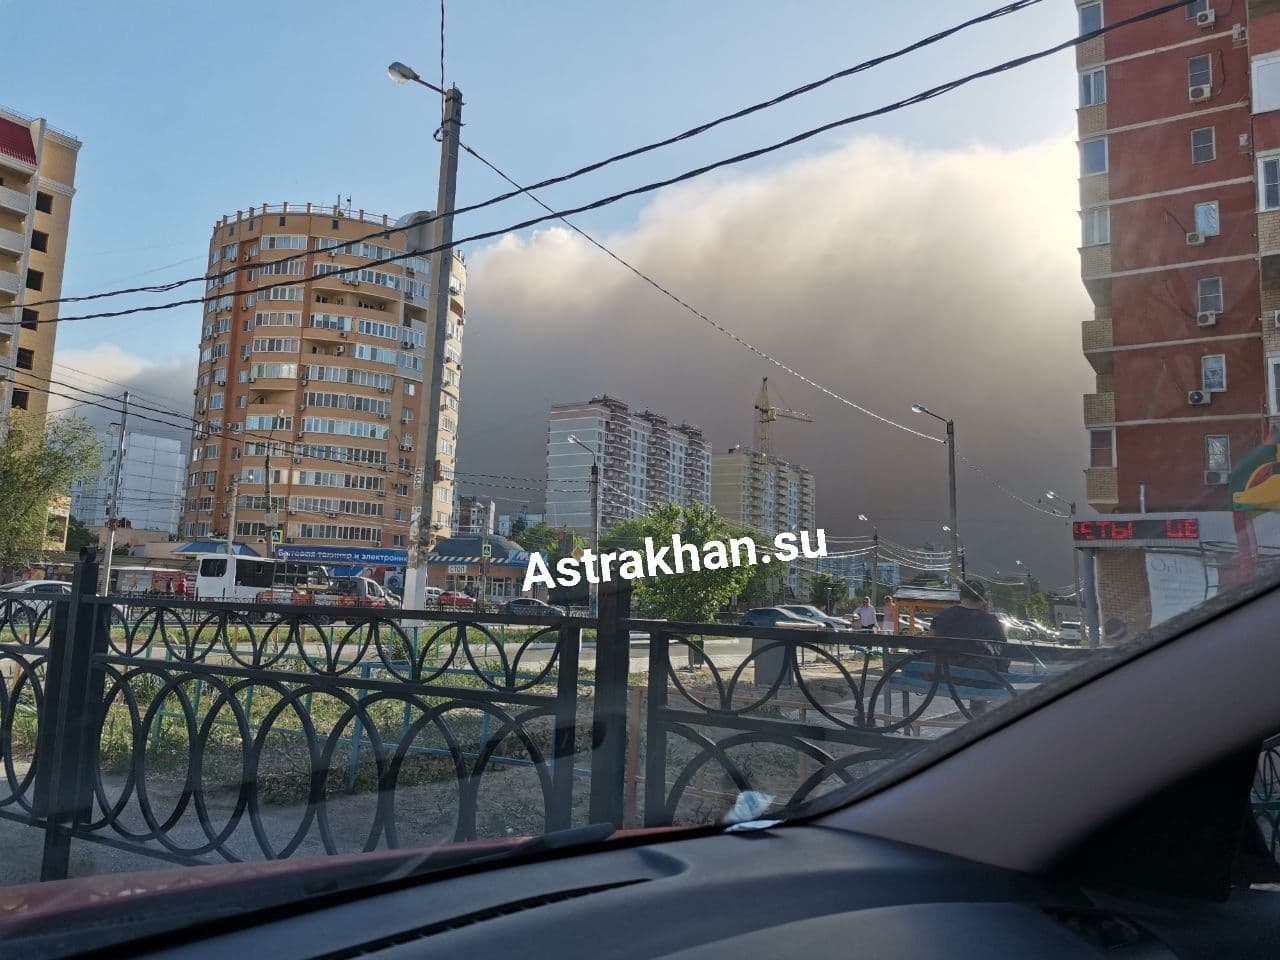 В воскресенье в Астрахань может прийти еще одна пыльная буря